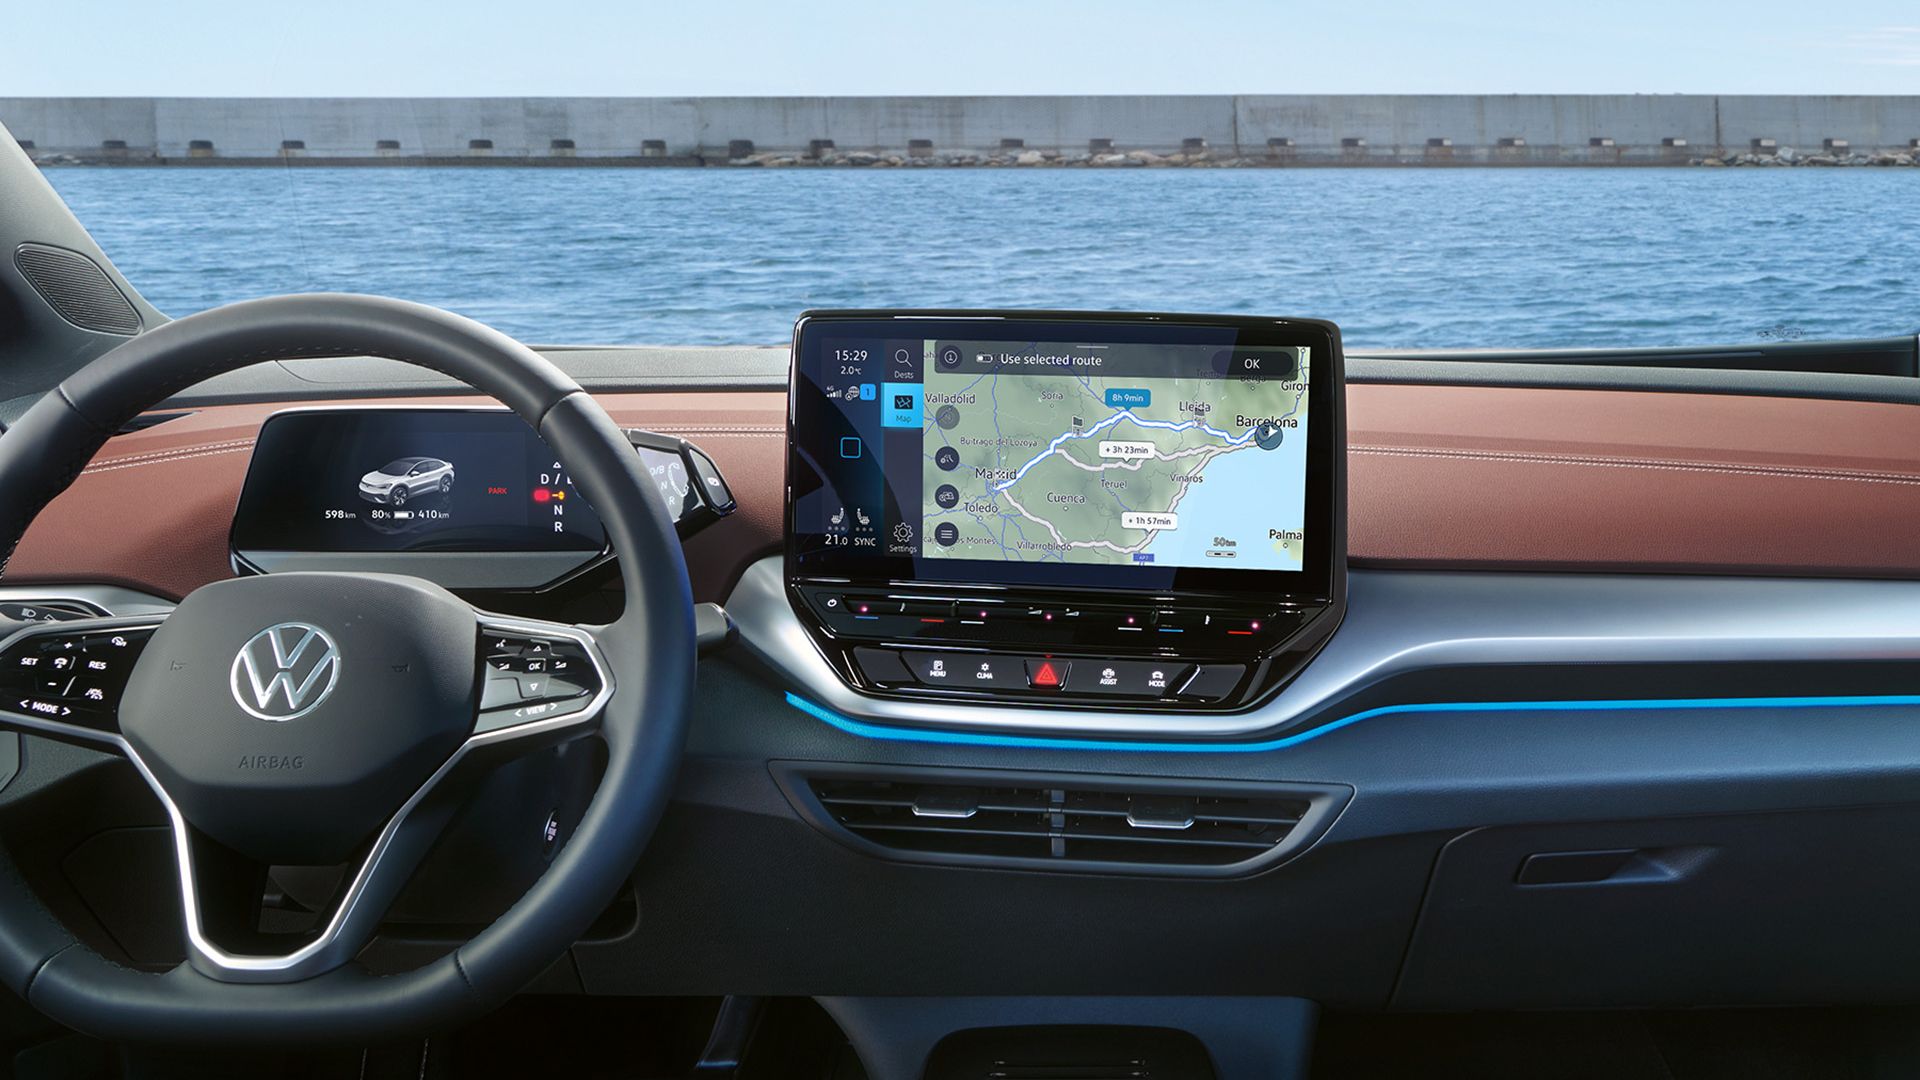 Digitales Cockpit des VW ID.5, Blick auf das Lenkrad und den Touchsreen, auf dem Display sieht man die Navigationskarte